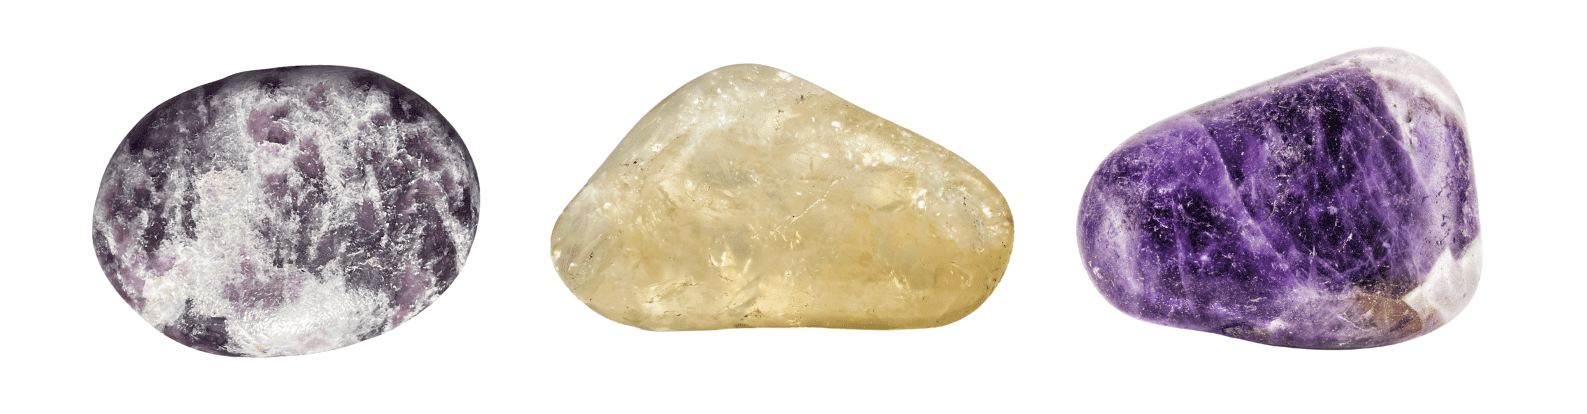 pierres contre le stress des examens : fluorite - citrine - améthyste